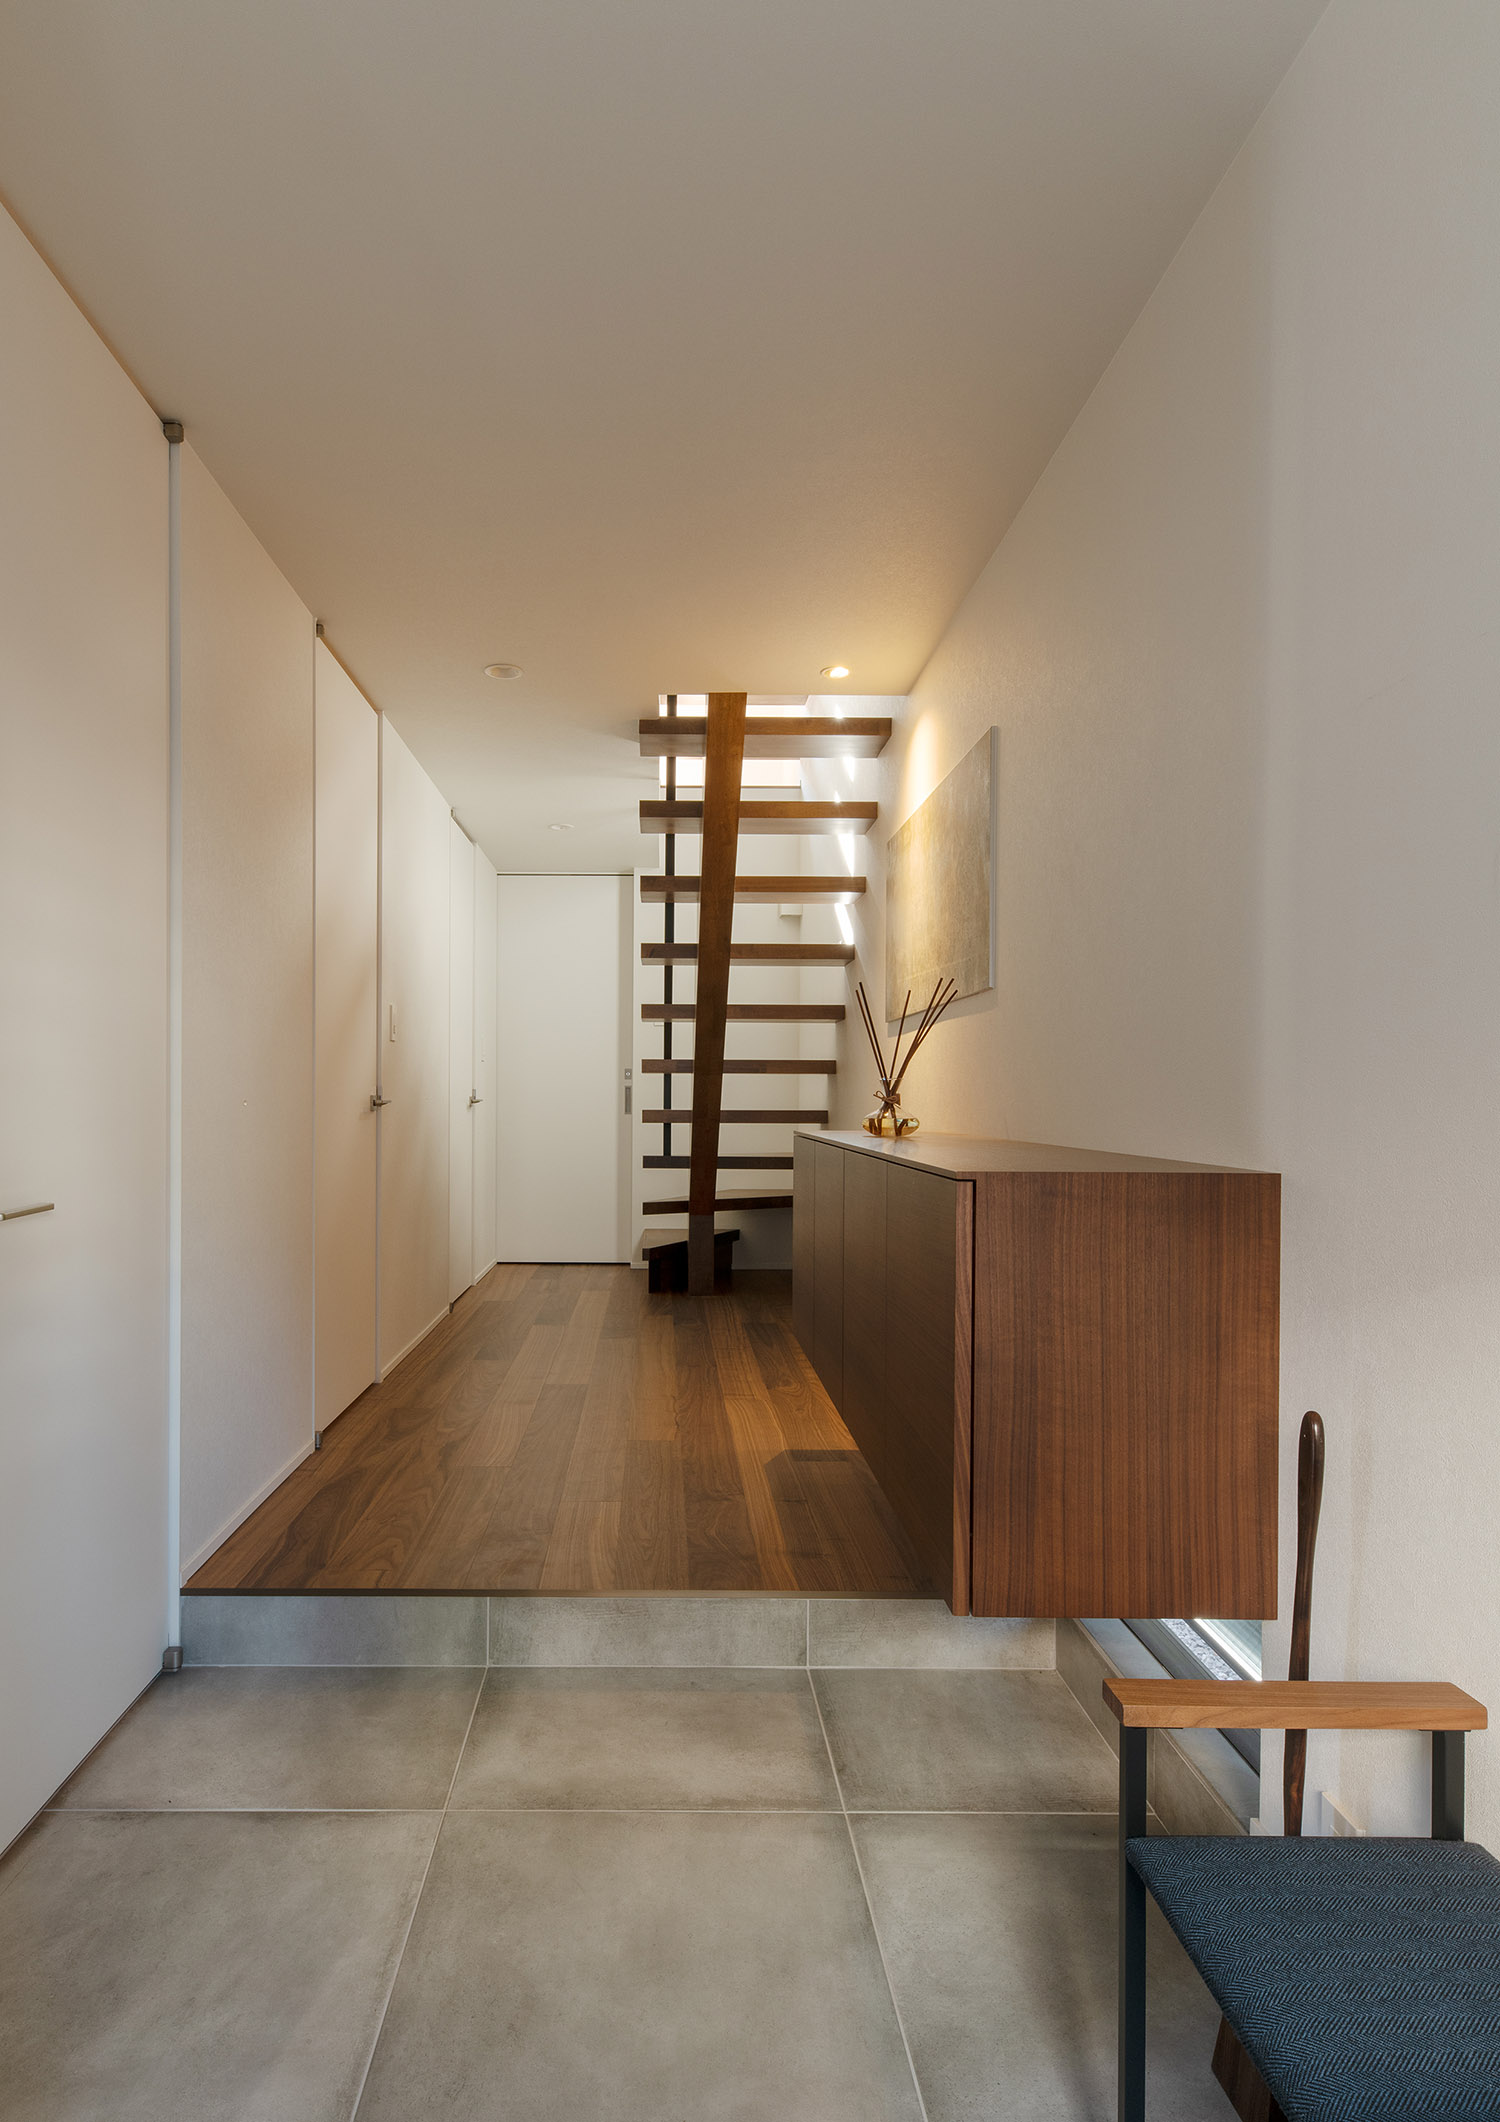 木製のスケルトン階段があるフローリングの廊下・デザイン住宅